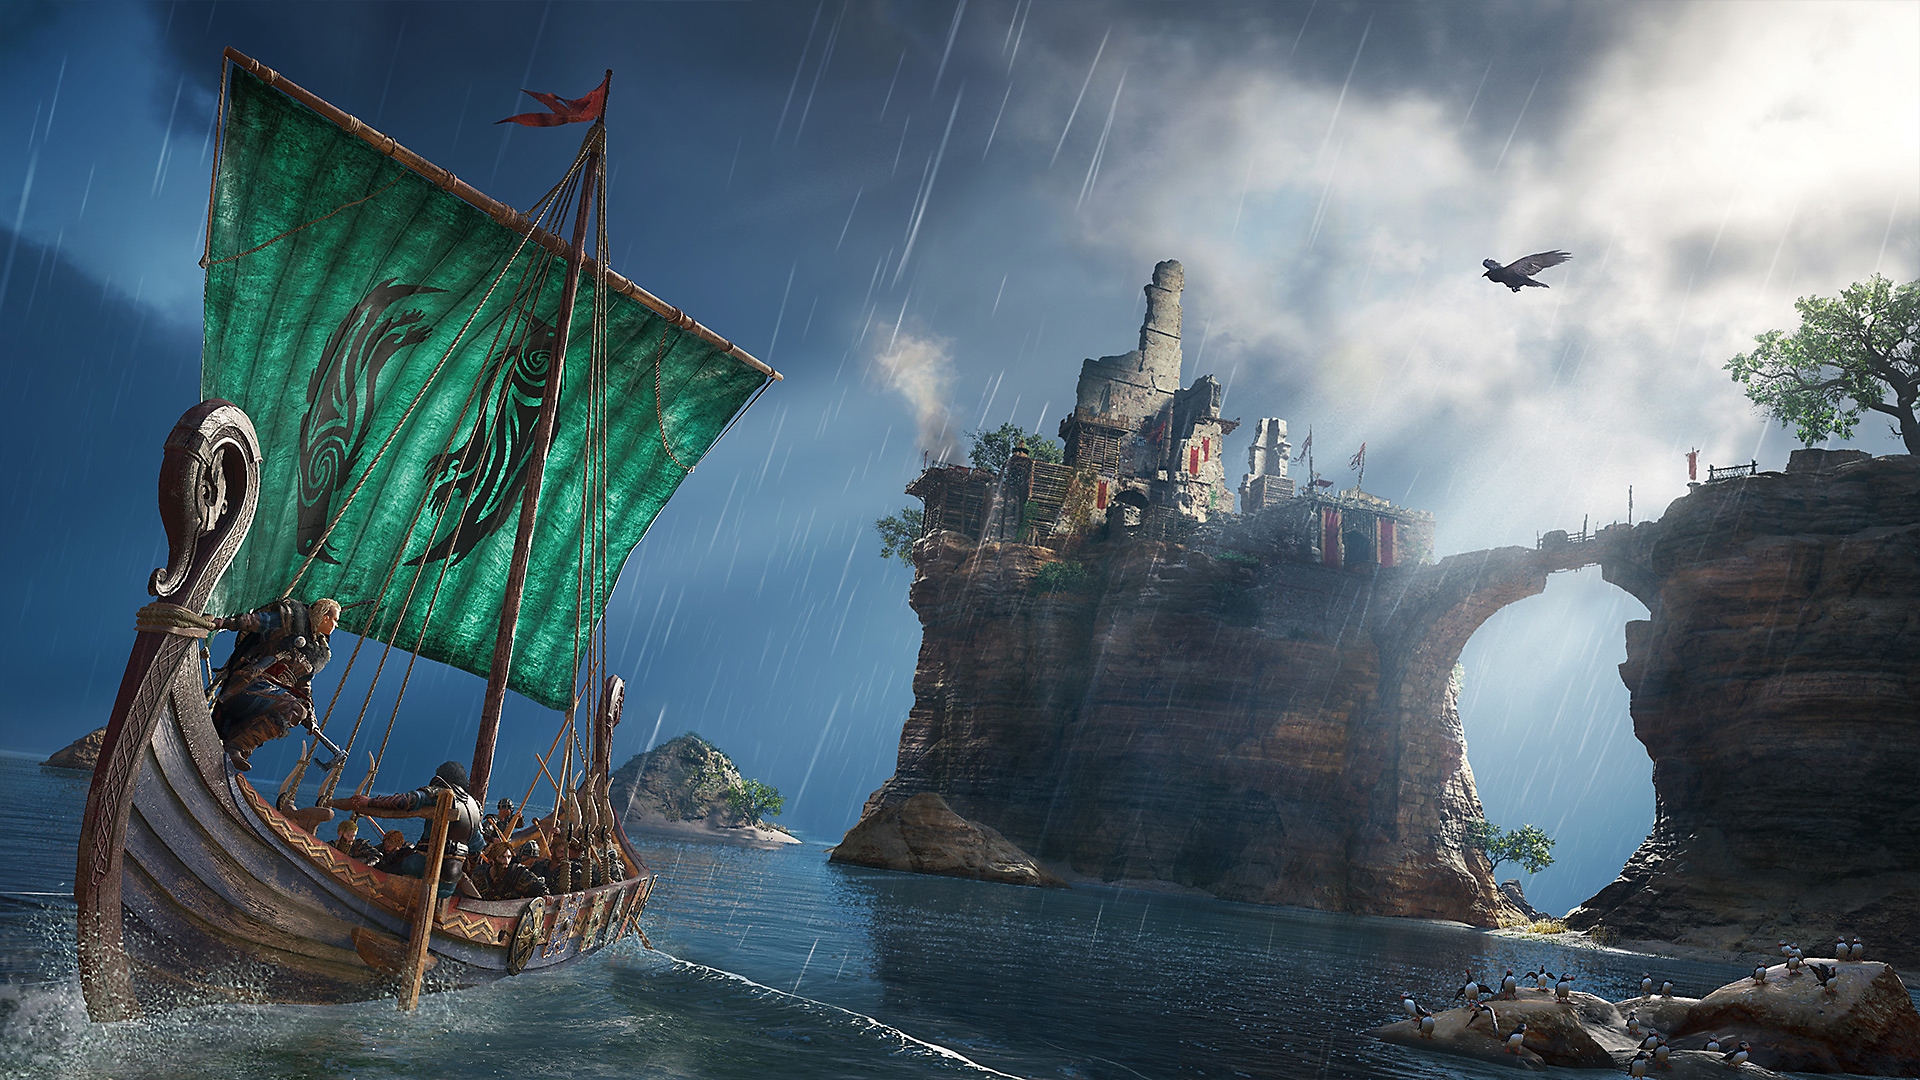 Captura de pantalla de Assassin's Creed Valhalla que muestra al personaje en un barco vikingo mirando un edificio en tierra elevada